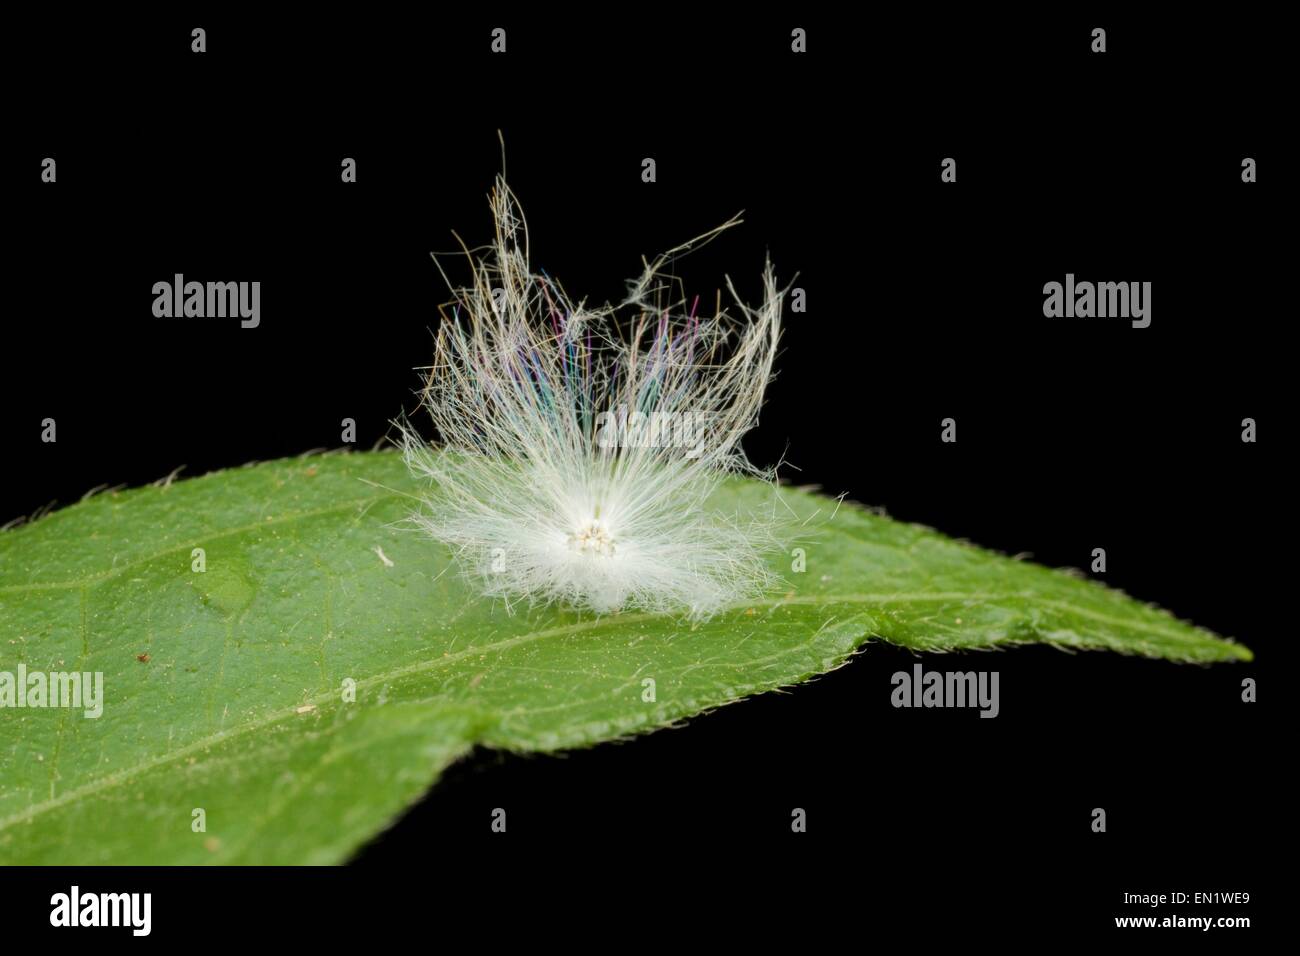 Planthopper sconosciuto ninfa, mostra filamenti bianchi per la protezione. Foto Stock